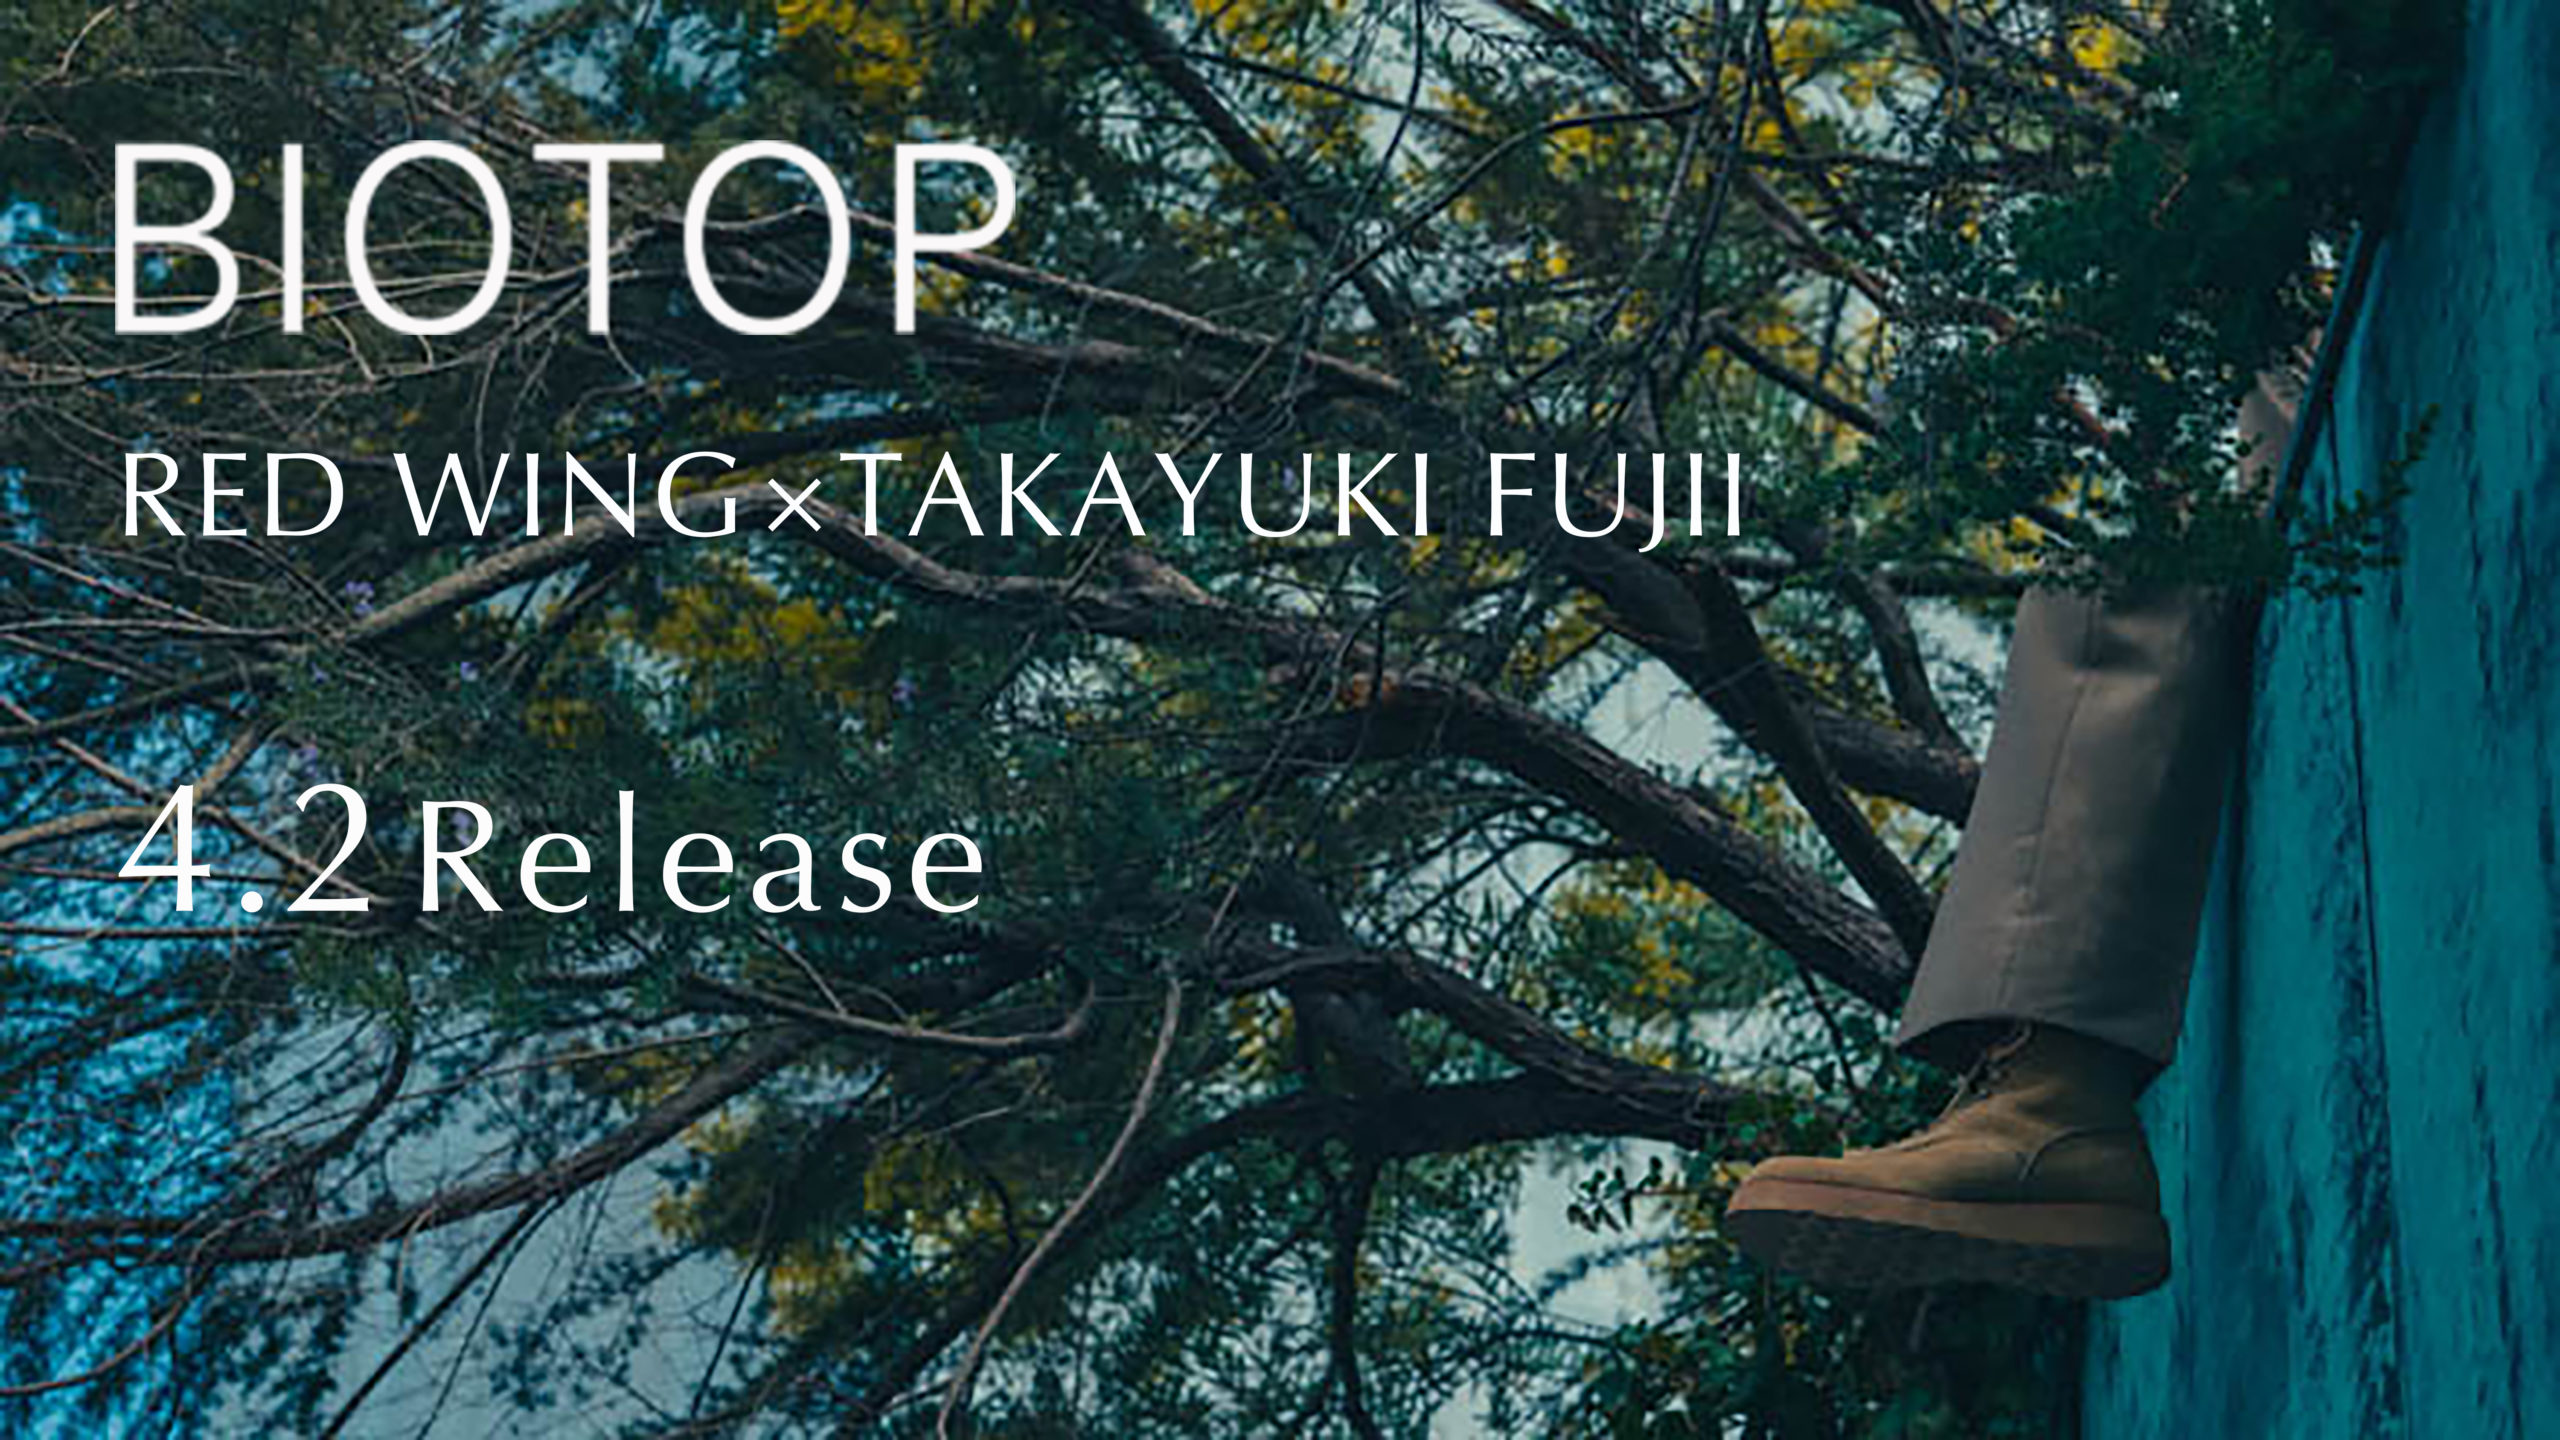 RED WING x TAKAYUKI FUJII for BIOTOP 即将发售